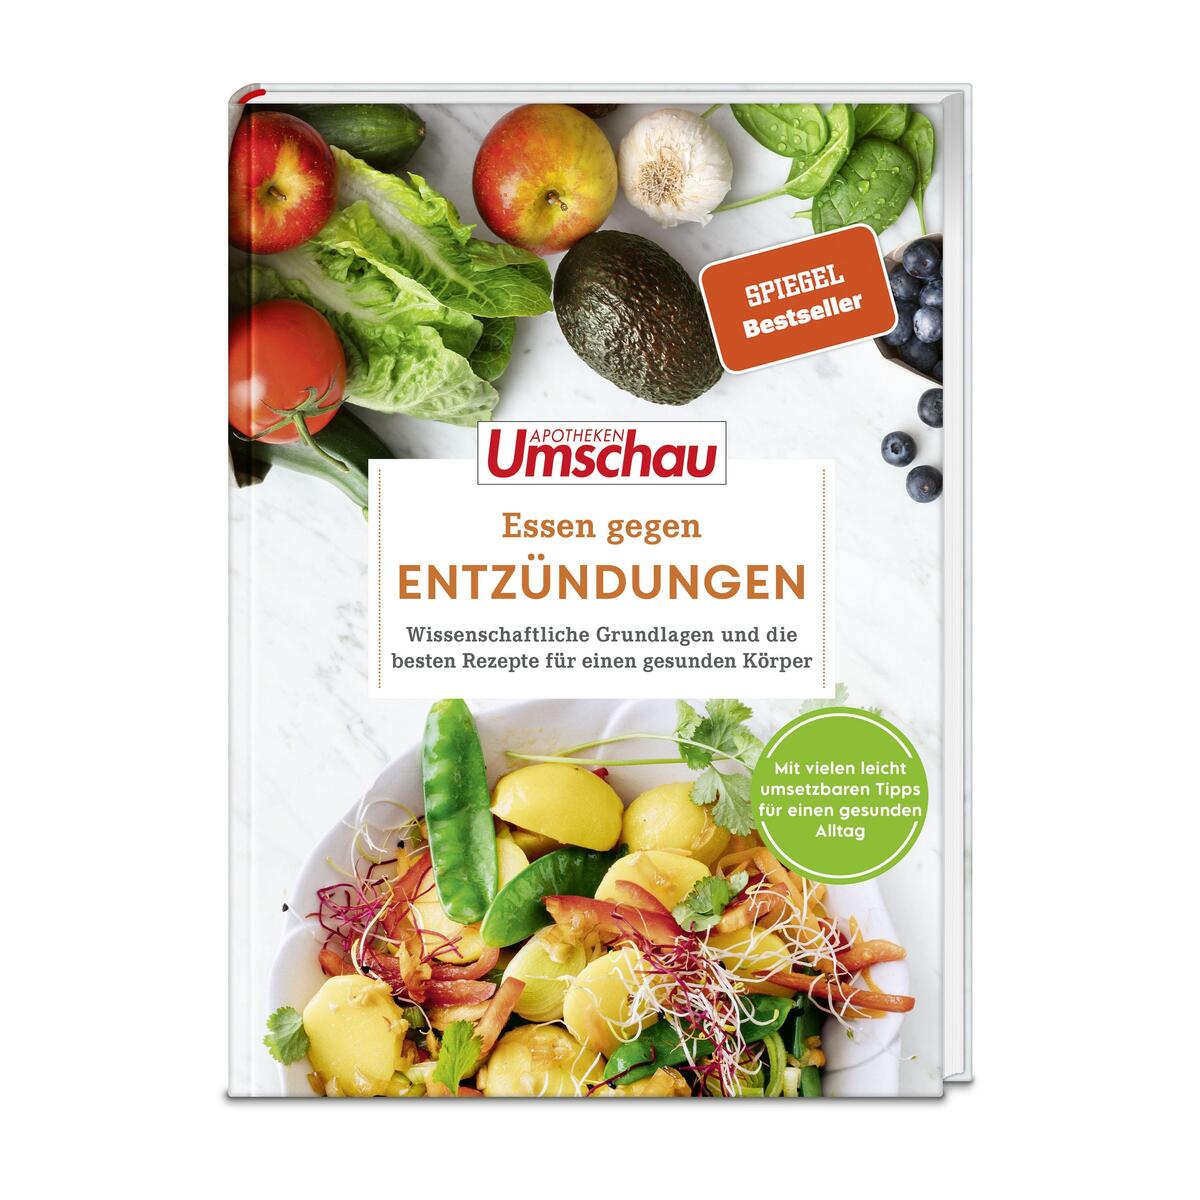 Apotheken Umschau: Essen gegen Entzündungen von Wort & Bild GmbH